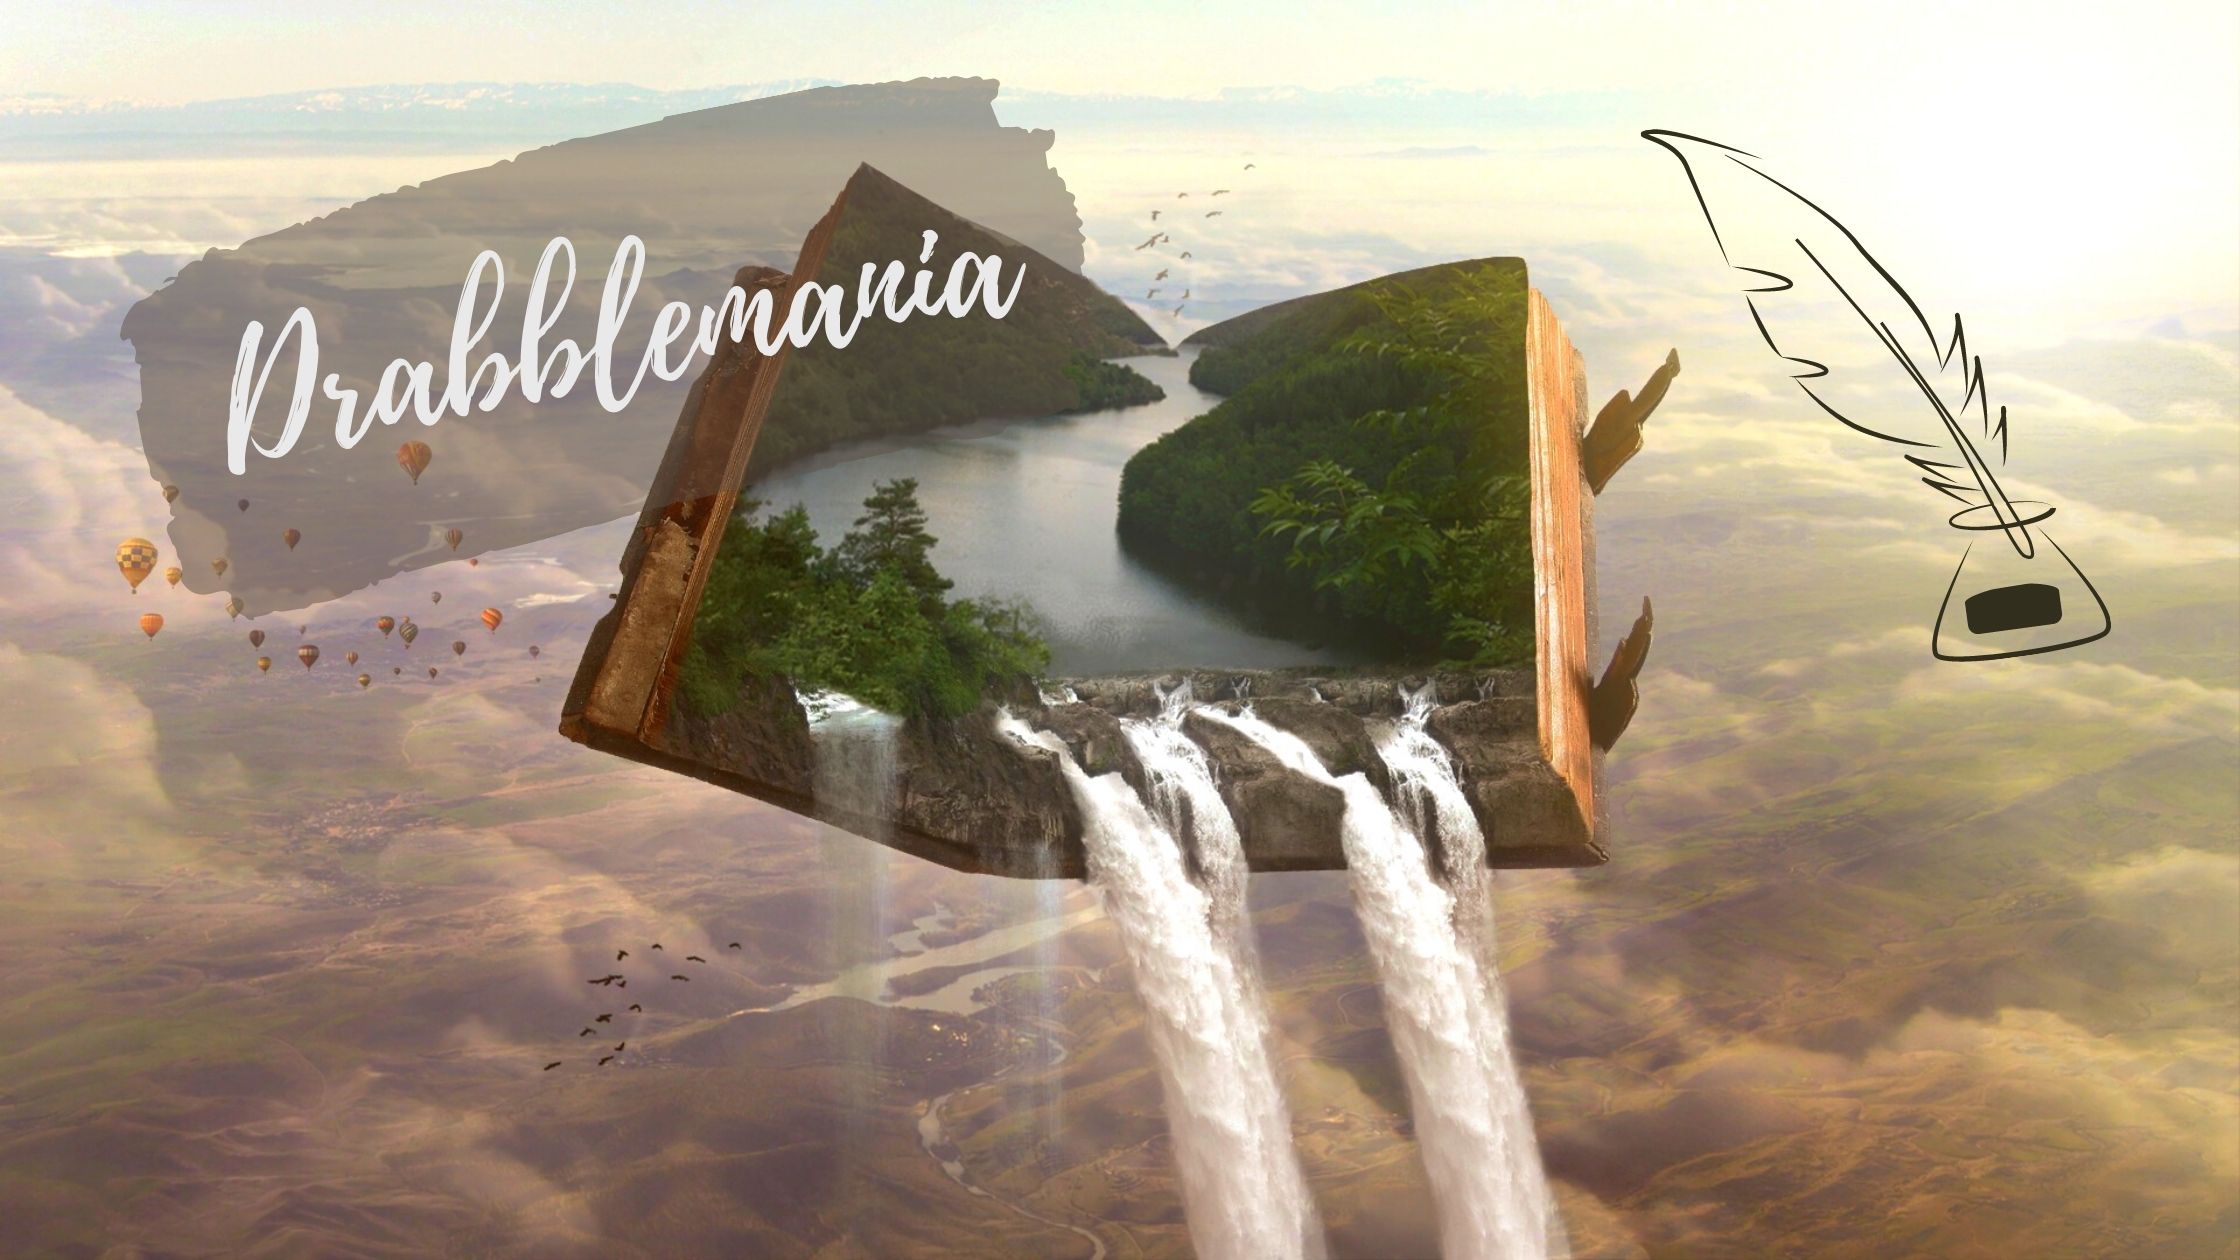 Drabble-Headerbild. Ein geöffnetes Buch schwebt über Wolken. Auf den offenen Seiten sieht man einen Fluss umsäumt von Bäumen, am unteren Rand stürzt das Wasser des Flusses in einem Wasserfall vom Buch herunter. Links oben der Schriftzug "Drabblemania", rechts oben die Zeichnung einer Schreibfeder.